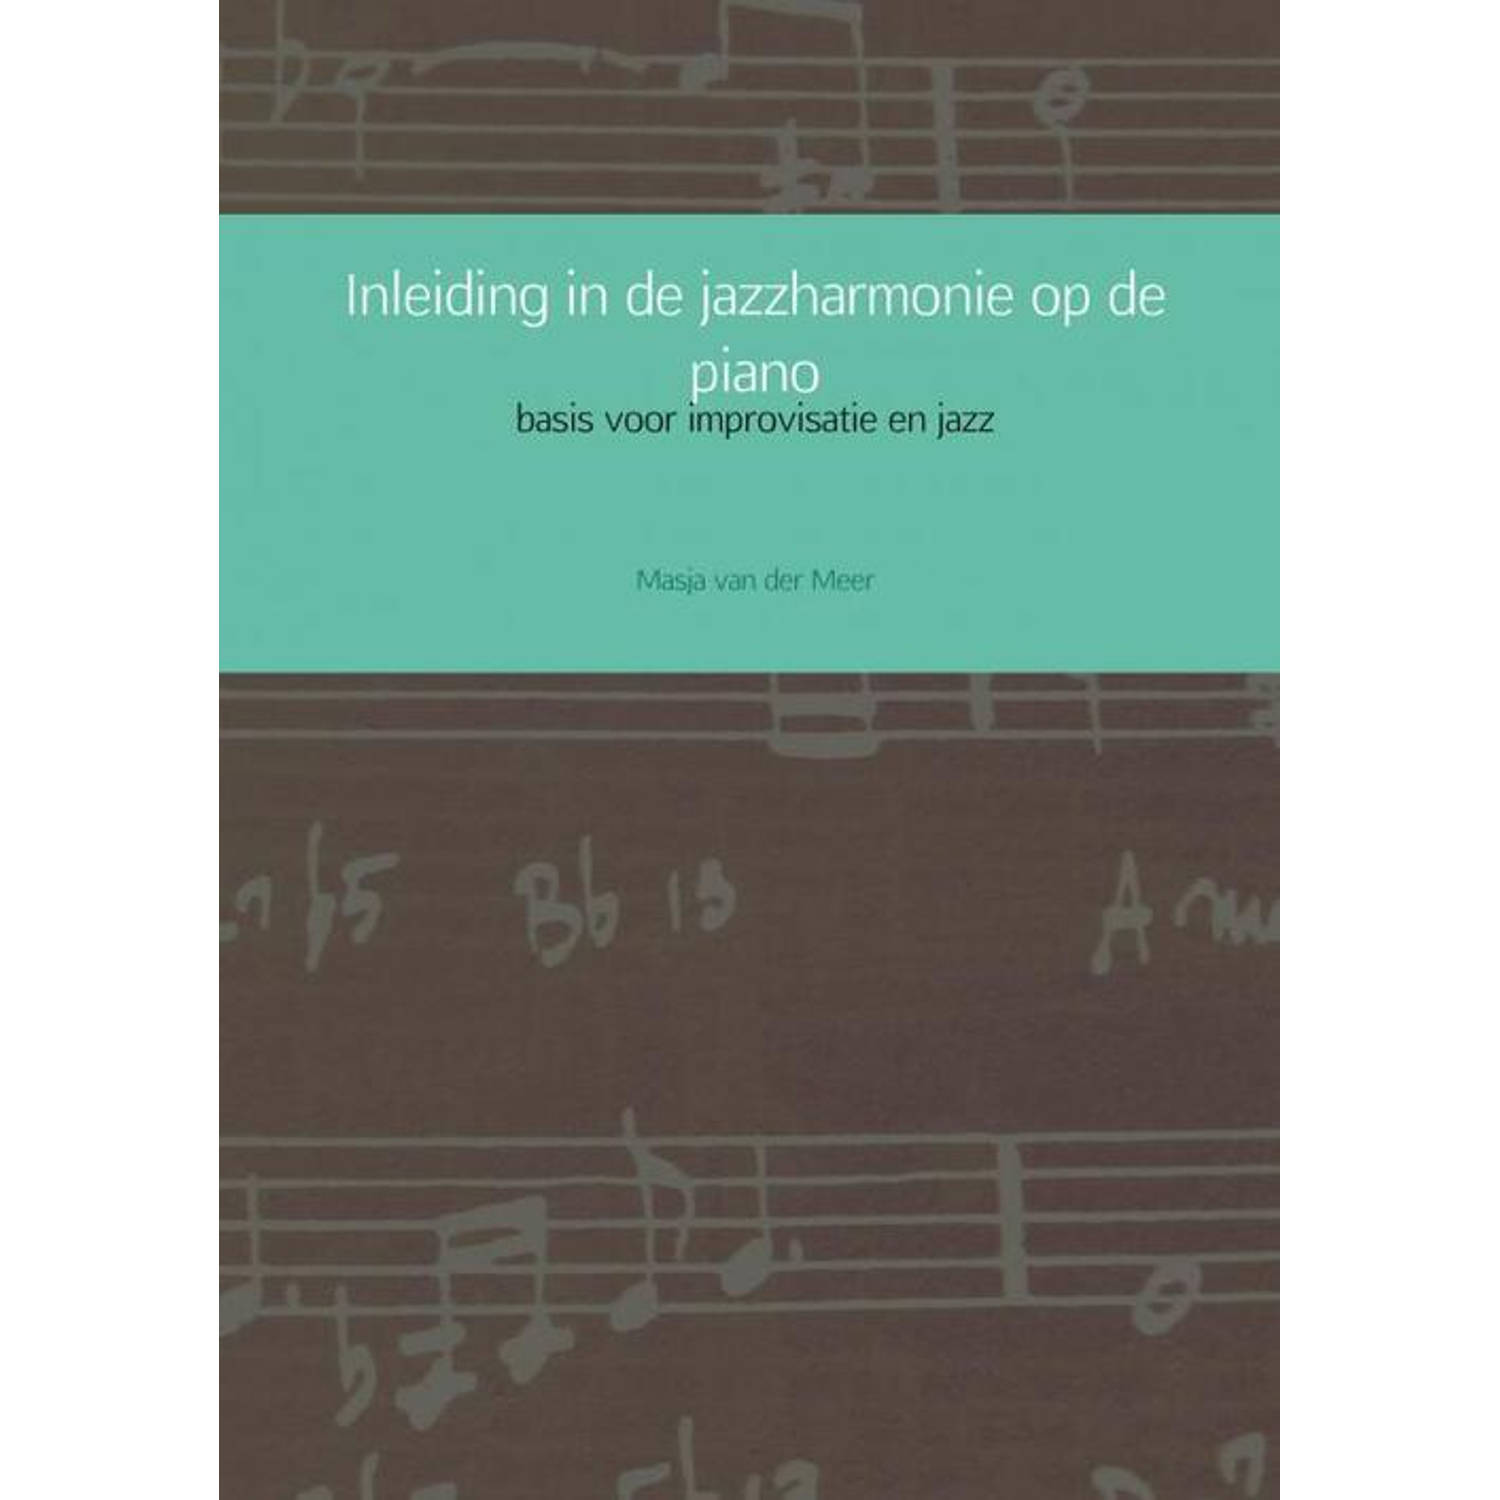 Inleiding in de jazzharmonie op de piano. basis voor improvisatie en jazz, Masja van der Meer, Paper